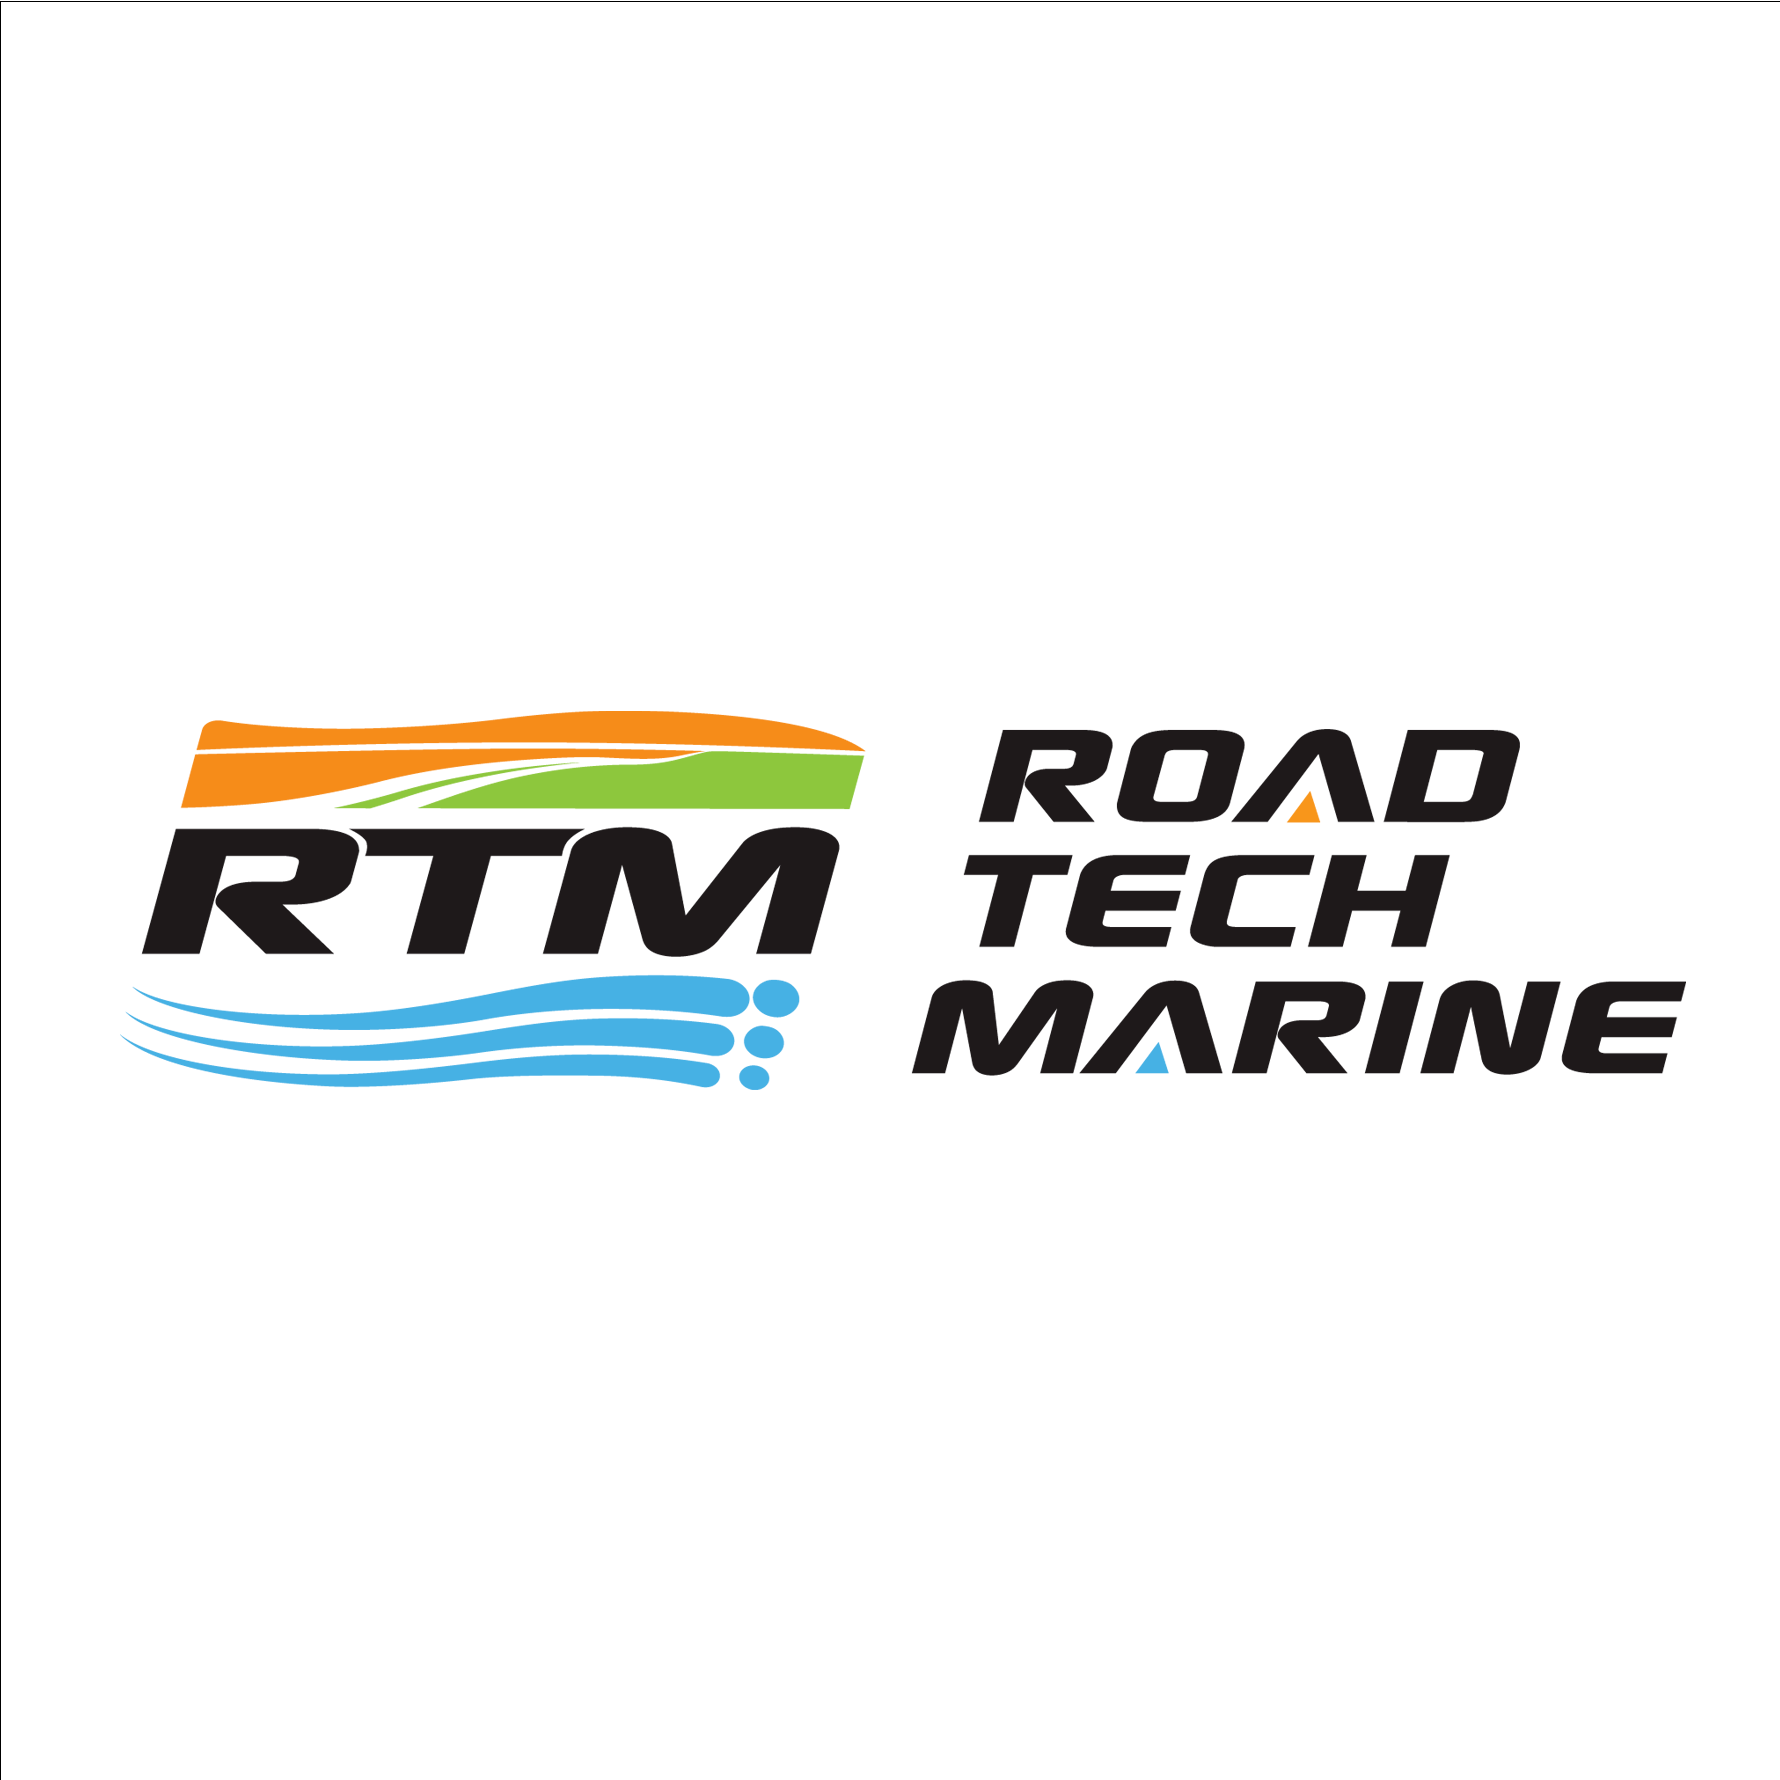 RTM - Road Tech Marine Penrith Logo